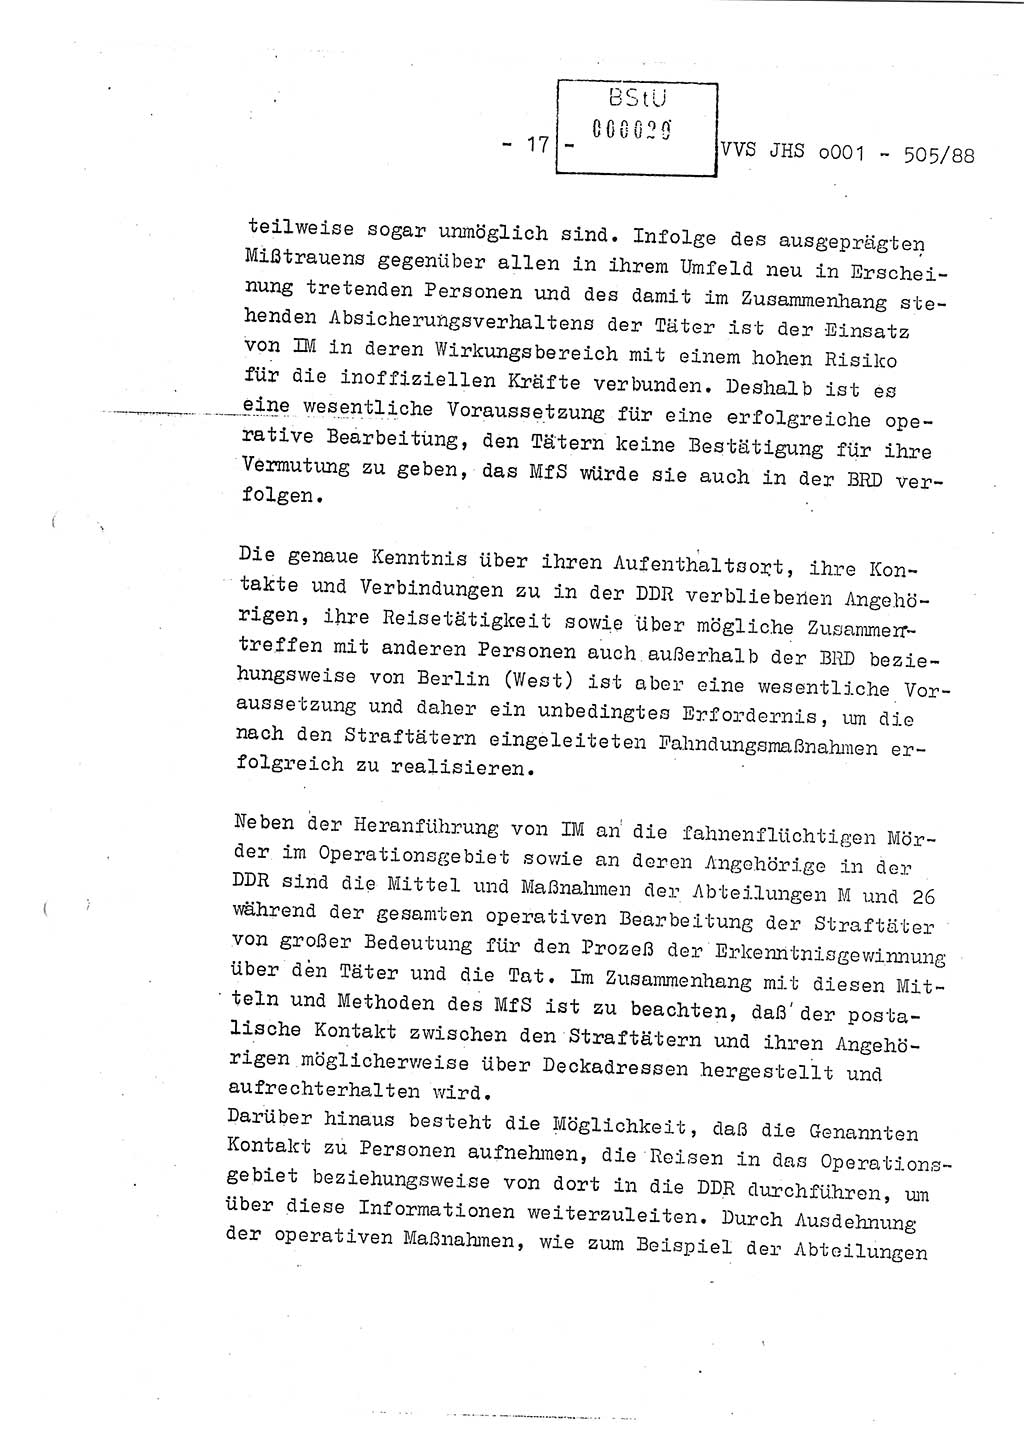 Diplomarbeit Leutnant Frank Schulze (HA Ⅸ/9), Ministerium für Staatssicherheit (MfS) [Deutsche Demokratische Republik (DDR)], Juristische Hochschule (JHS), Vertrauliche Verschlußsache (VVS) o001-505/88, Potsdam 1988, Seite 17 (Dipl.-Arb. MfS DDR JHS VVS o001-505/88 1988, S. 17)